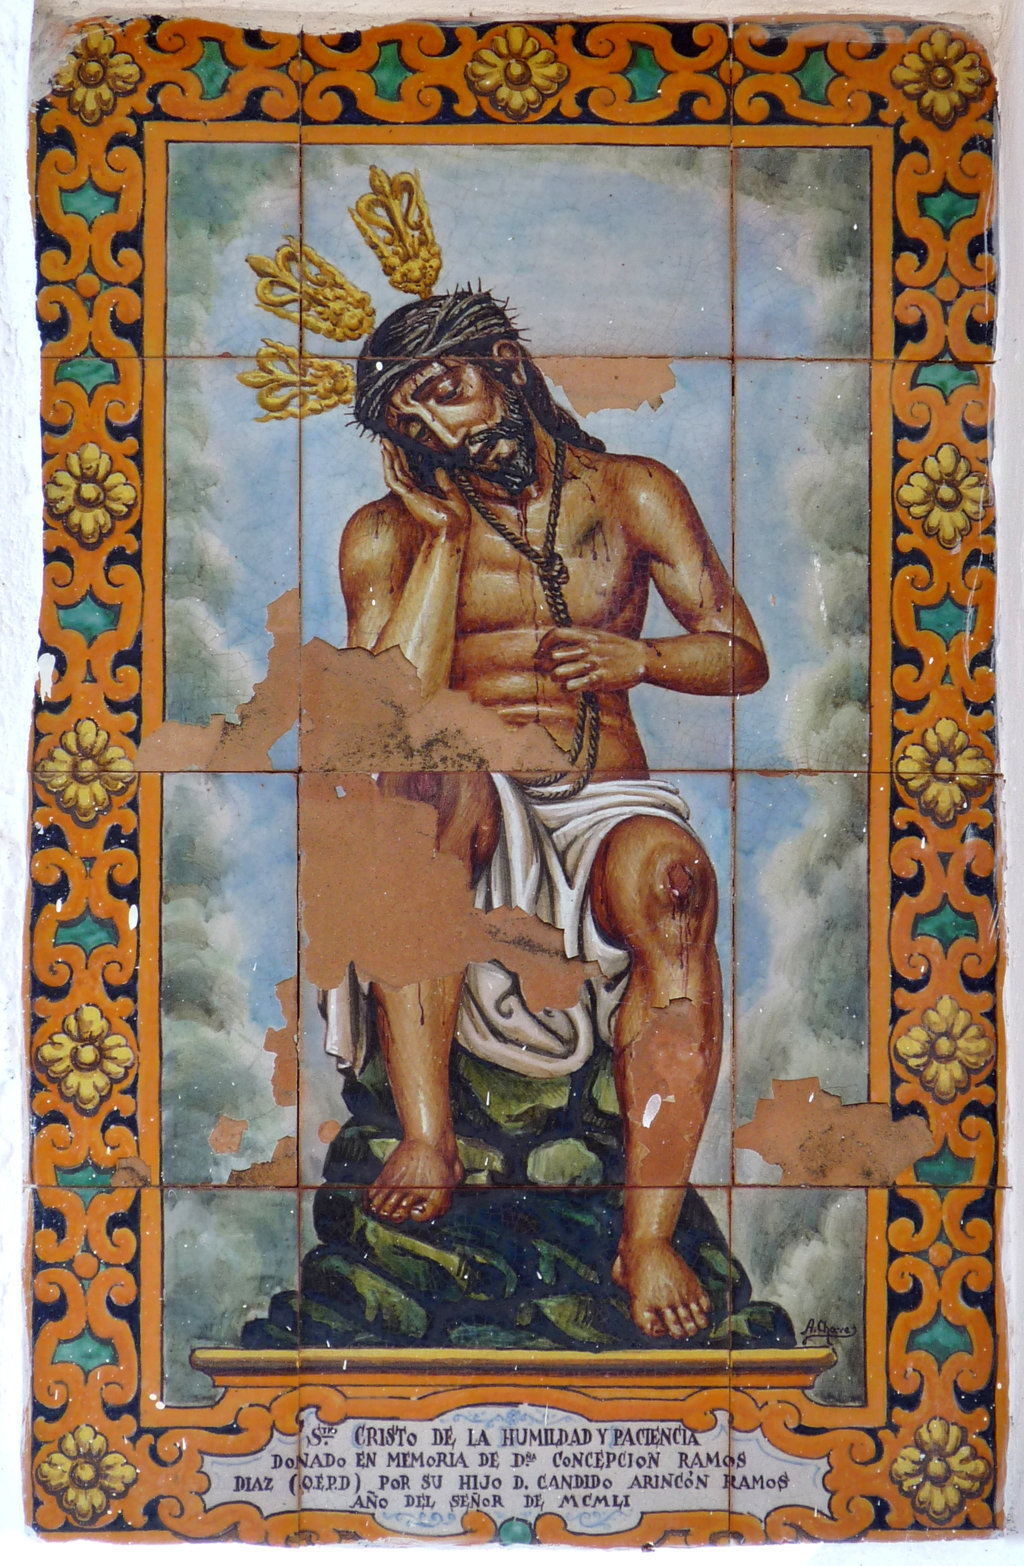 00301. Retablo cerámico. Cristo de la Humildad y Paciencia. Capilla de la Santísima Trinidad. Almonaster la Real. Huelva.